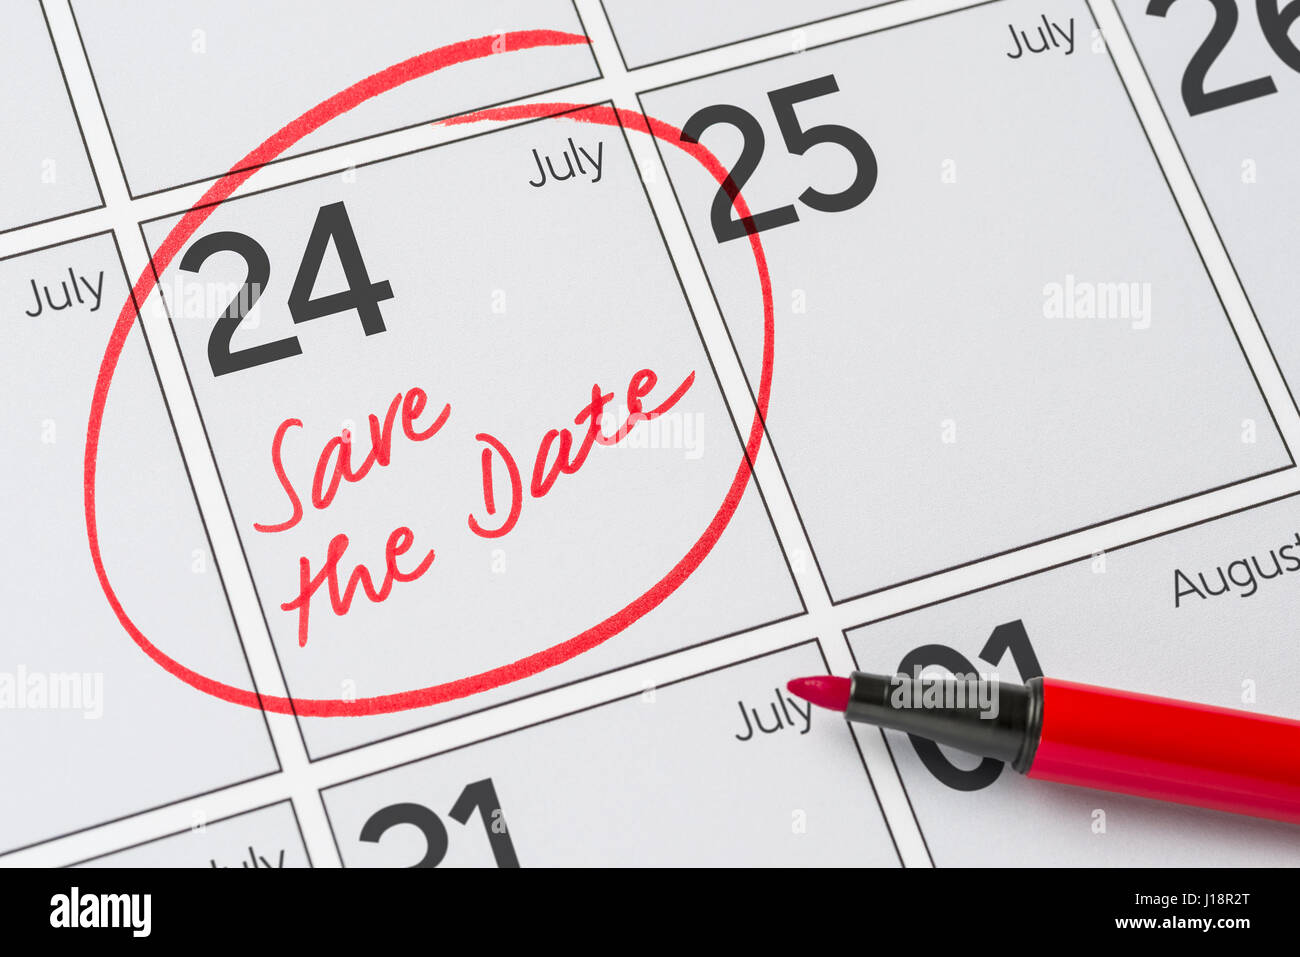 Enregistrer la date inscrite sur un calendrier - Juillet 24 Banque D'Images